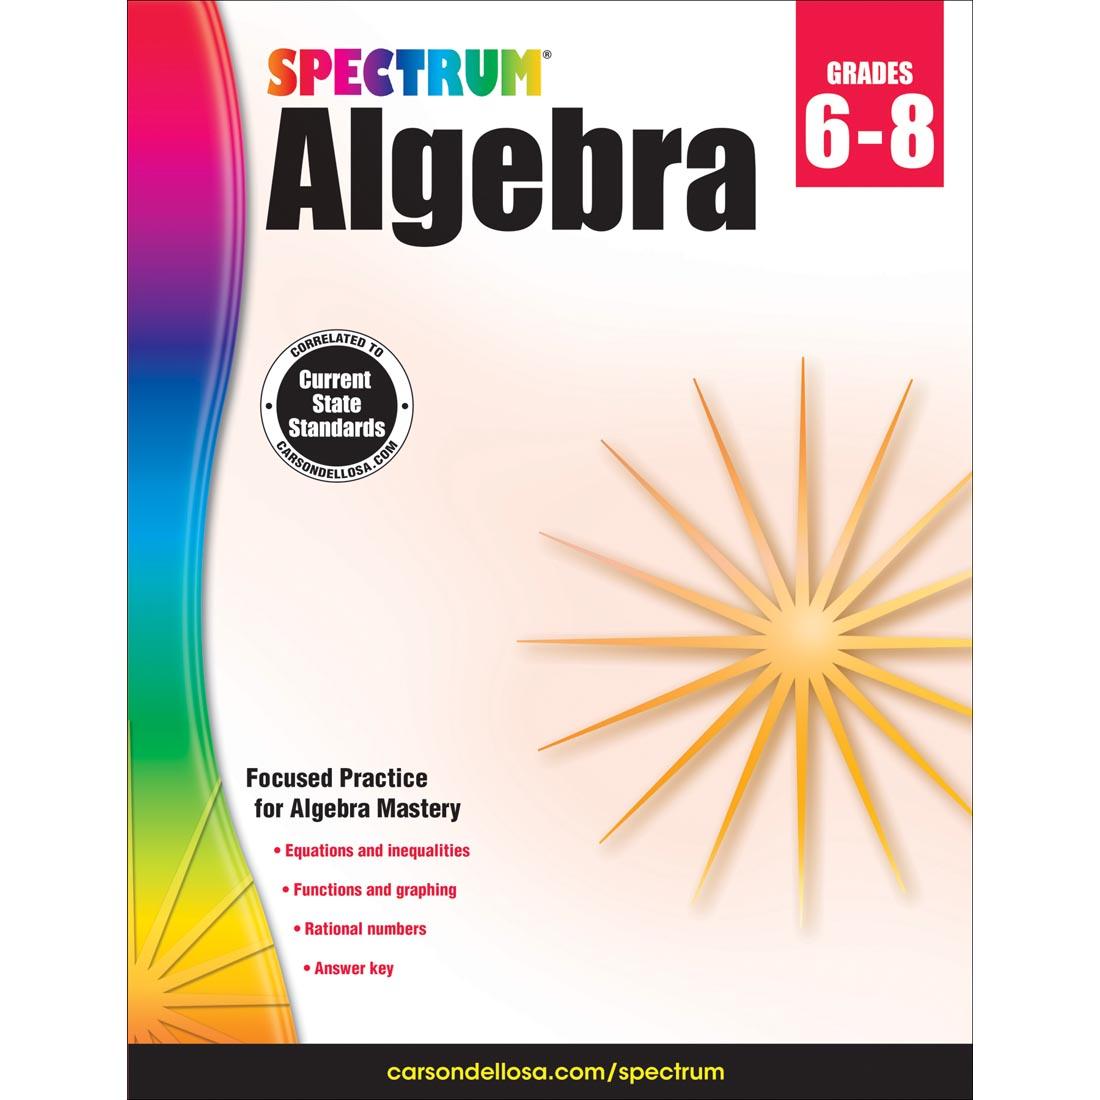 Spectrum Algebra Book by Carson Dellosa